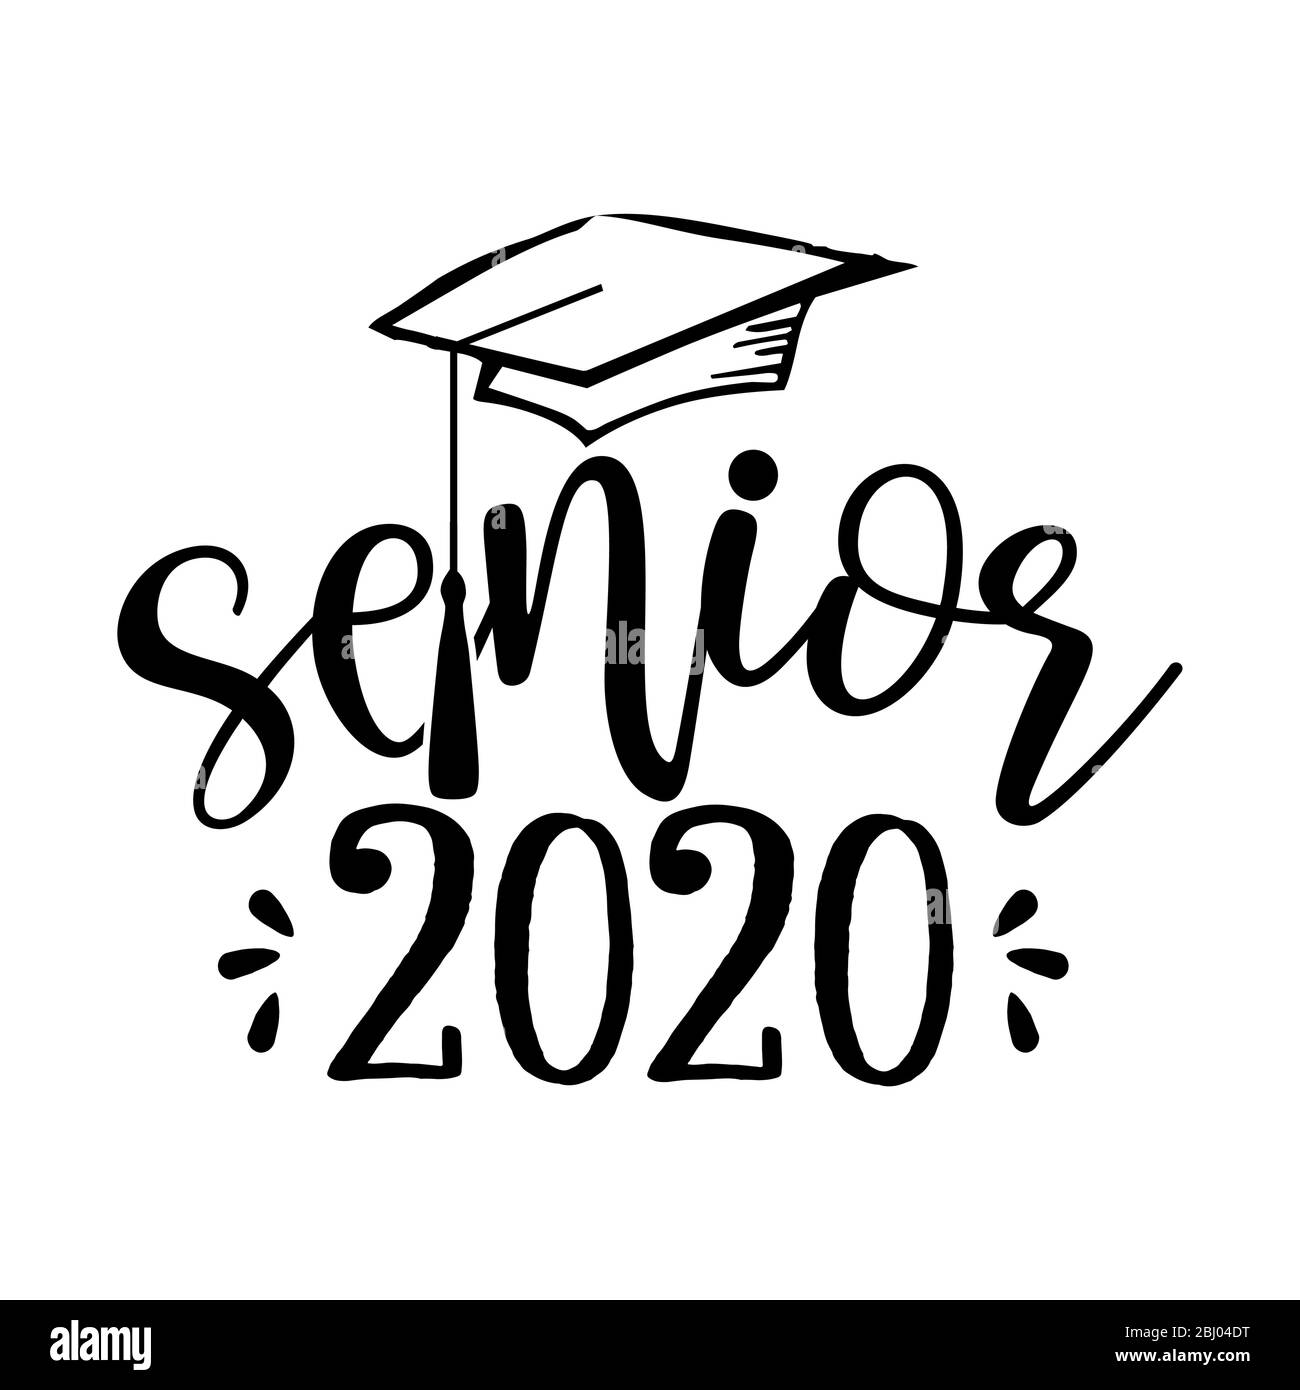 Senior 2020 - Typografie. Schwarzer Text isoliert weißer Hintergrund. Vektor-Illustration einer Abschlussklasse von 2020. Grafikelemente für T-Shirts, und Stock Vektor